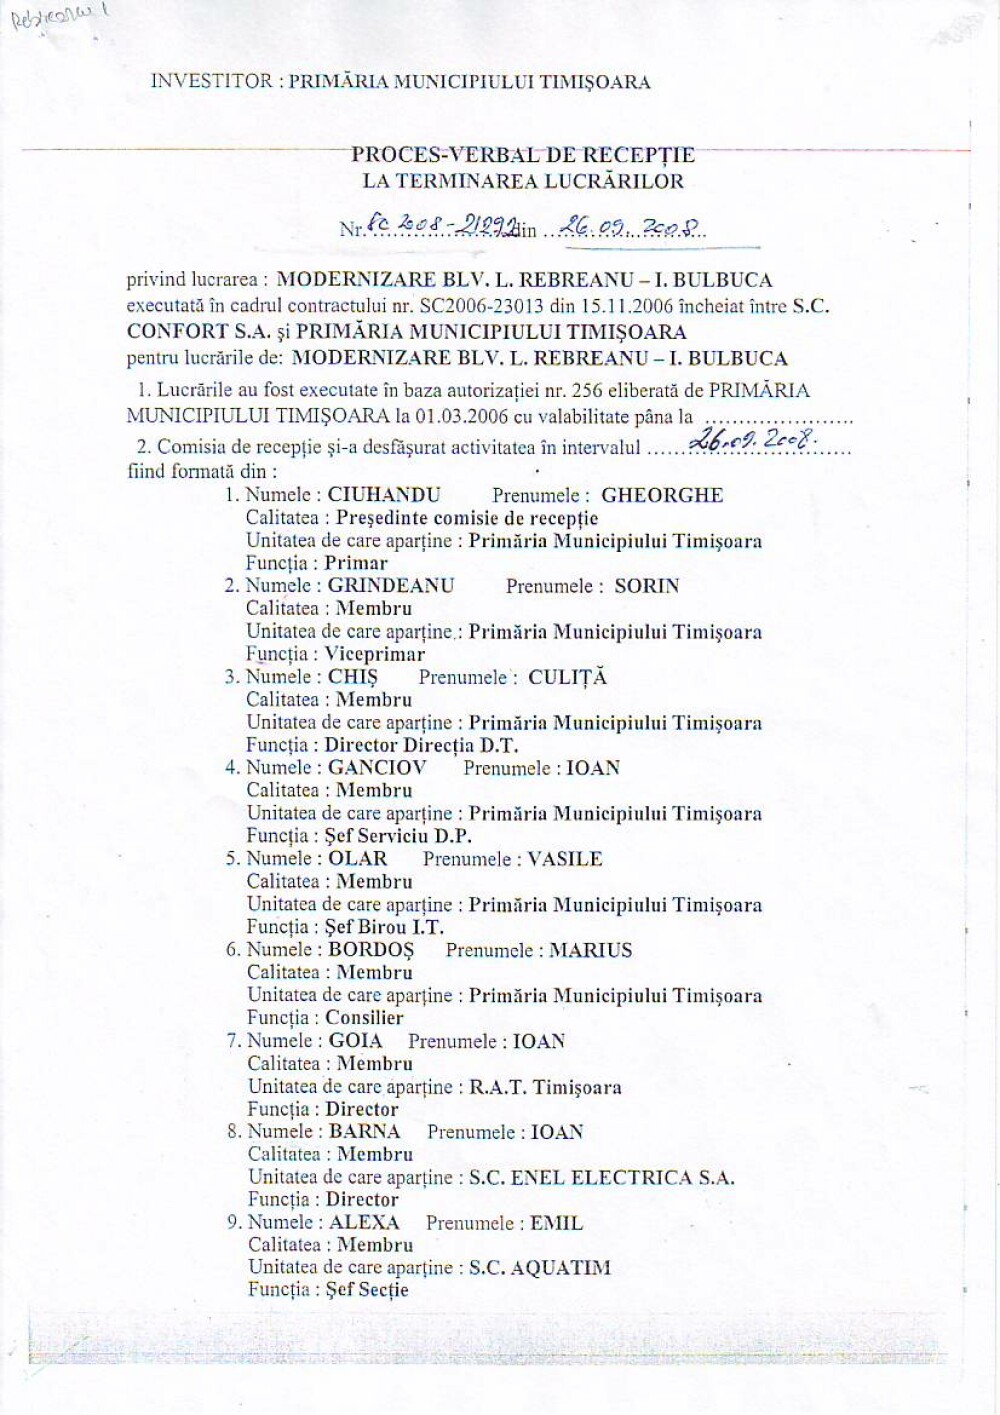 Explicatiile Primariei Timisoara: cum au fost falsificate sapte semnaturi pe documente oficiale - Imaginea 3